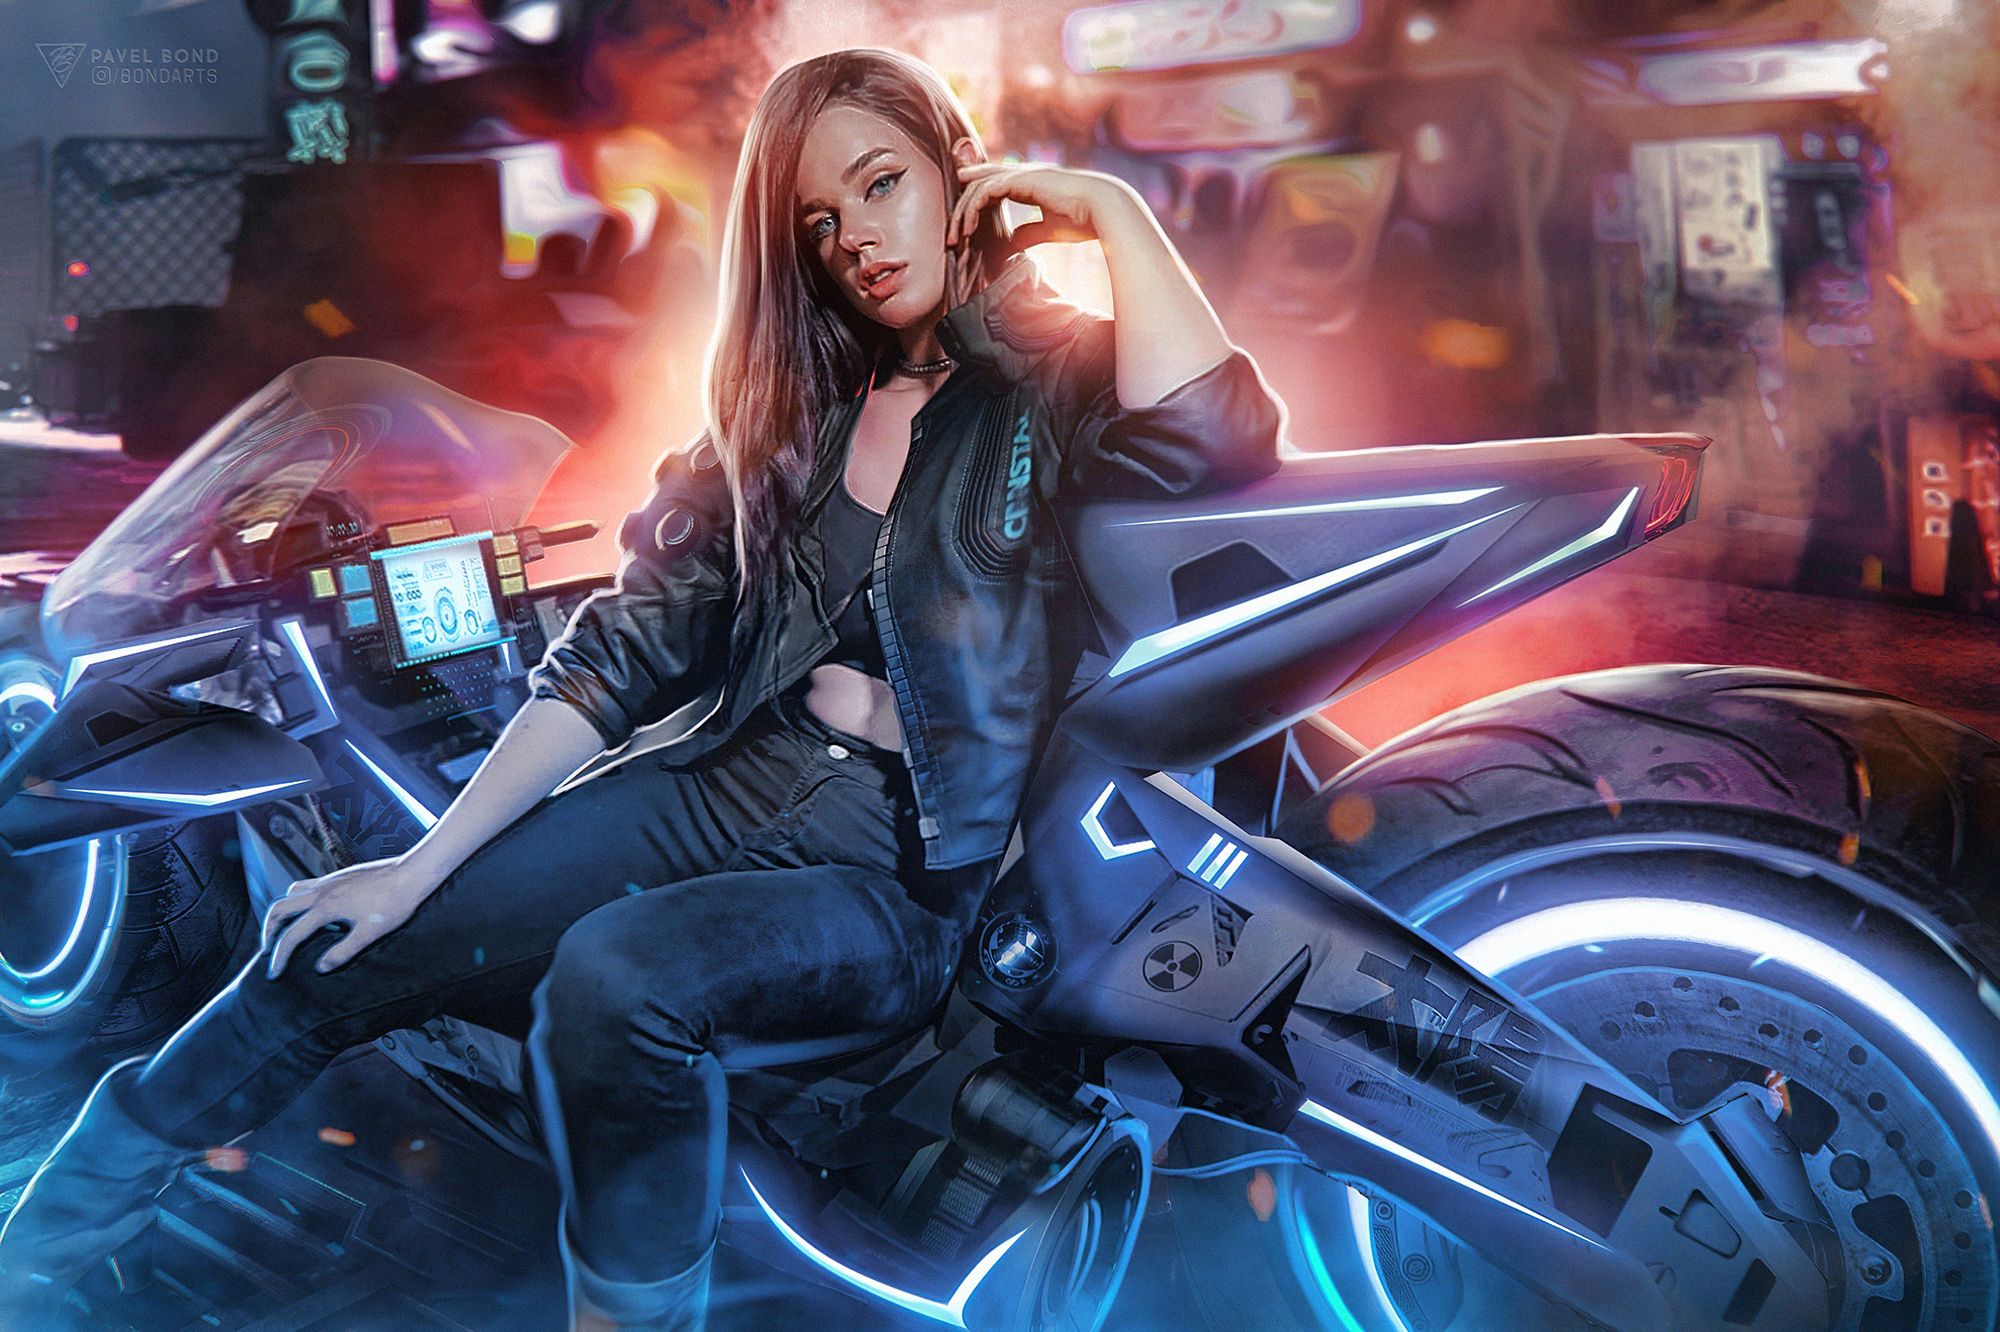 Cyberpunk Biker Girl Art, HD Artist, 4k Wallpaper, Image